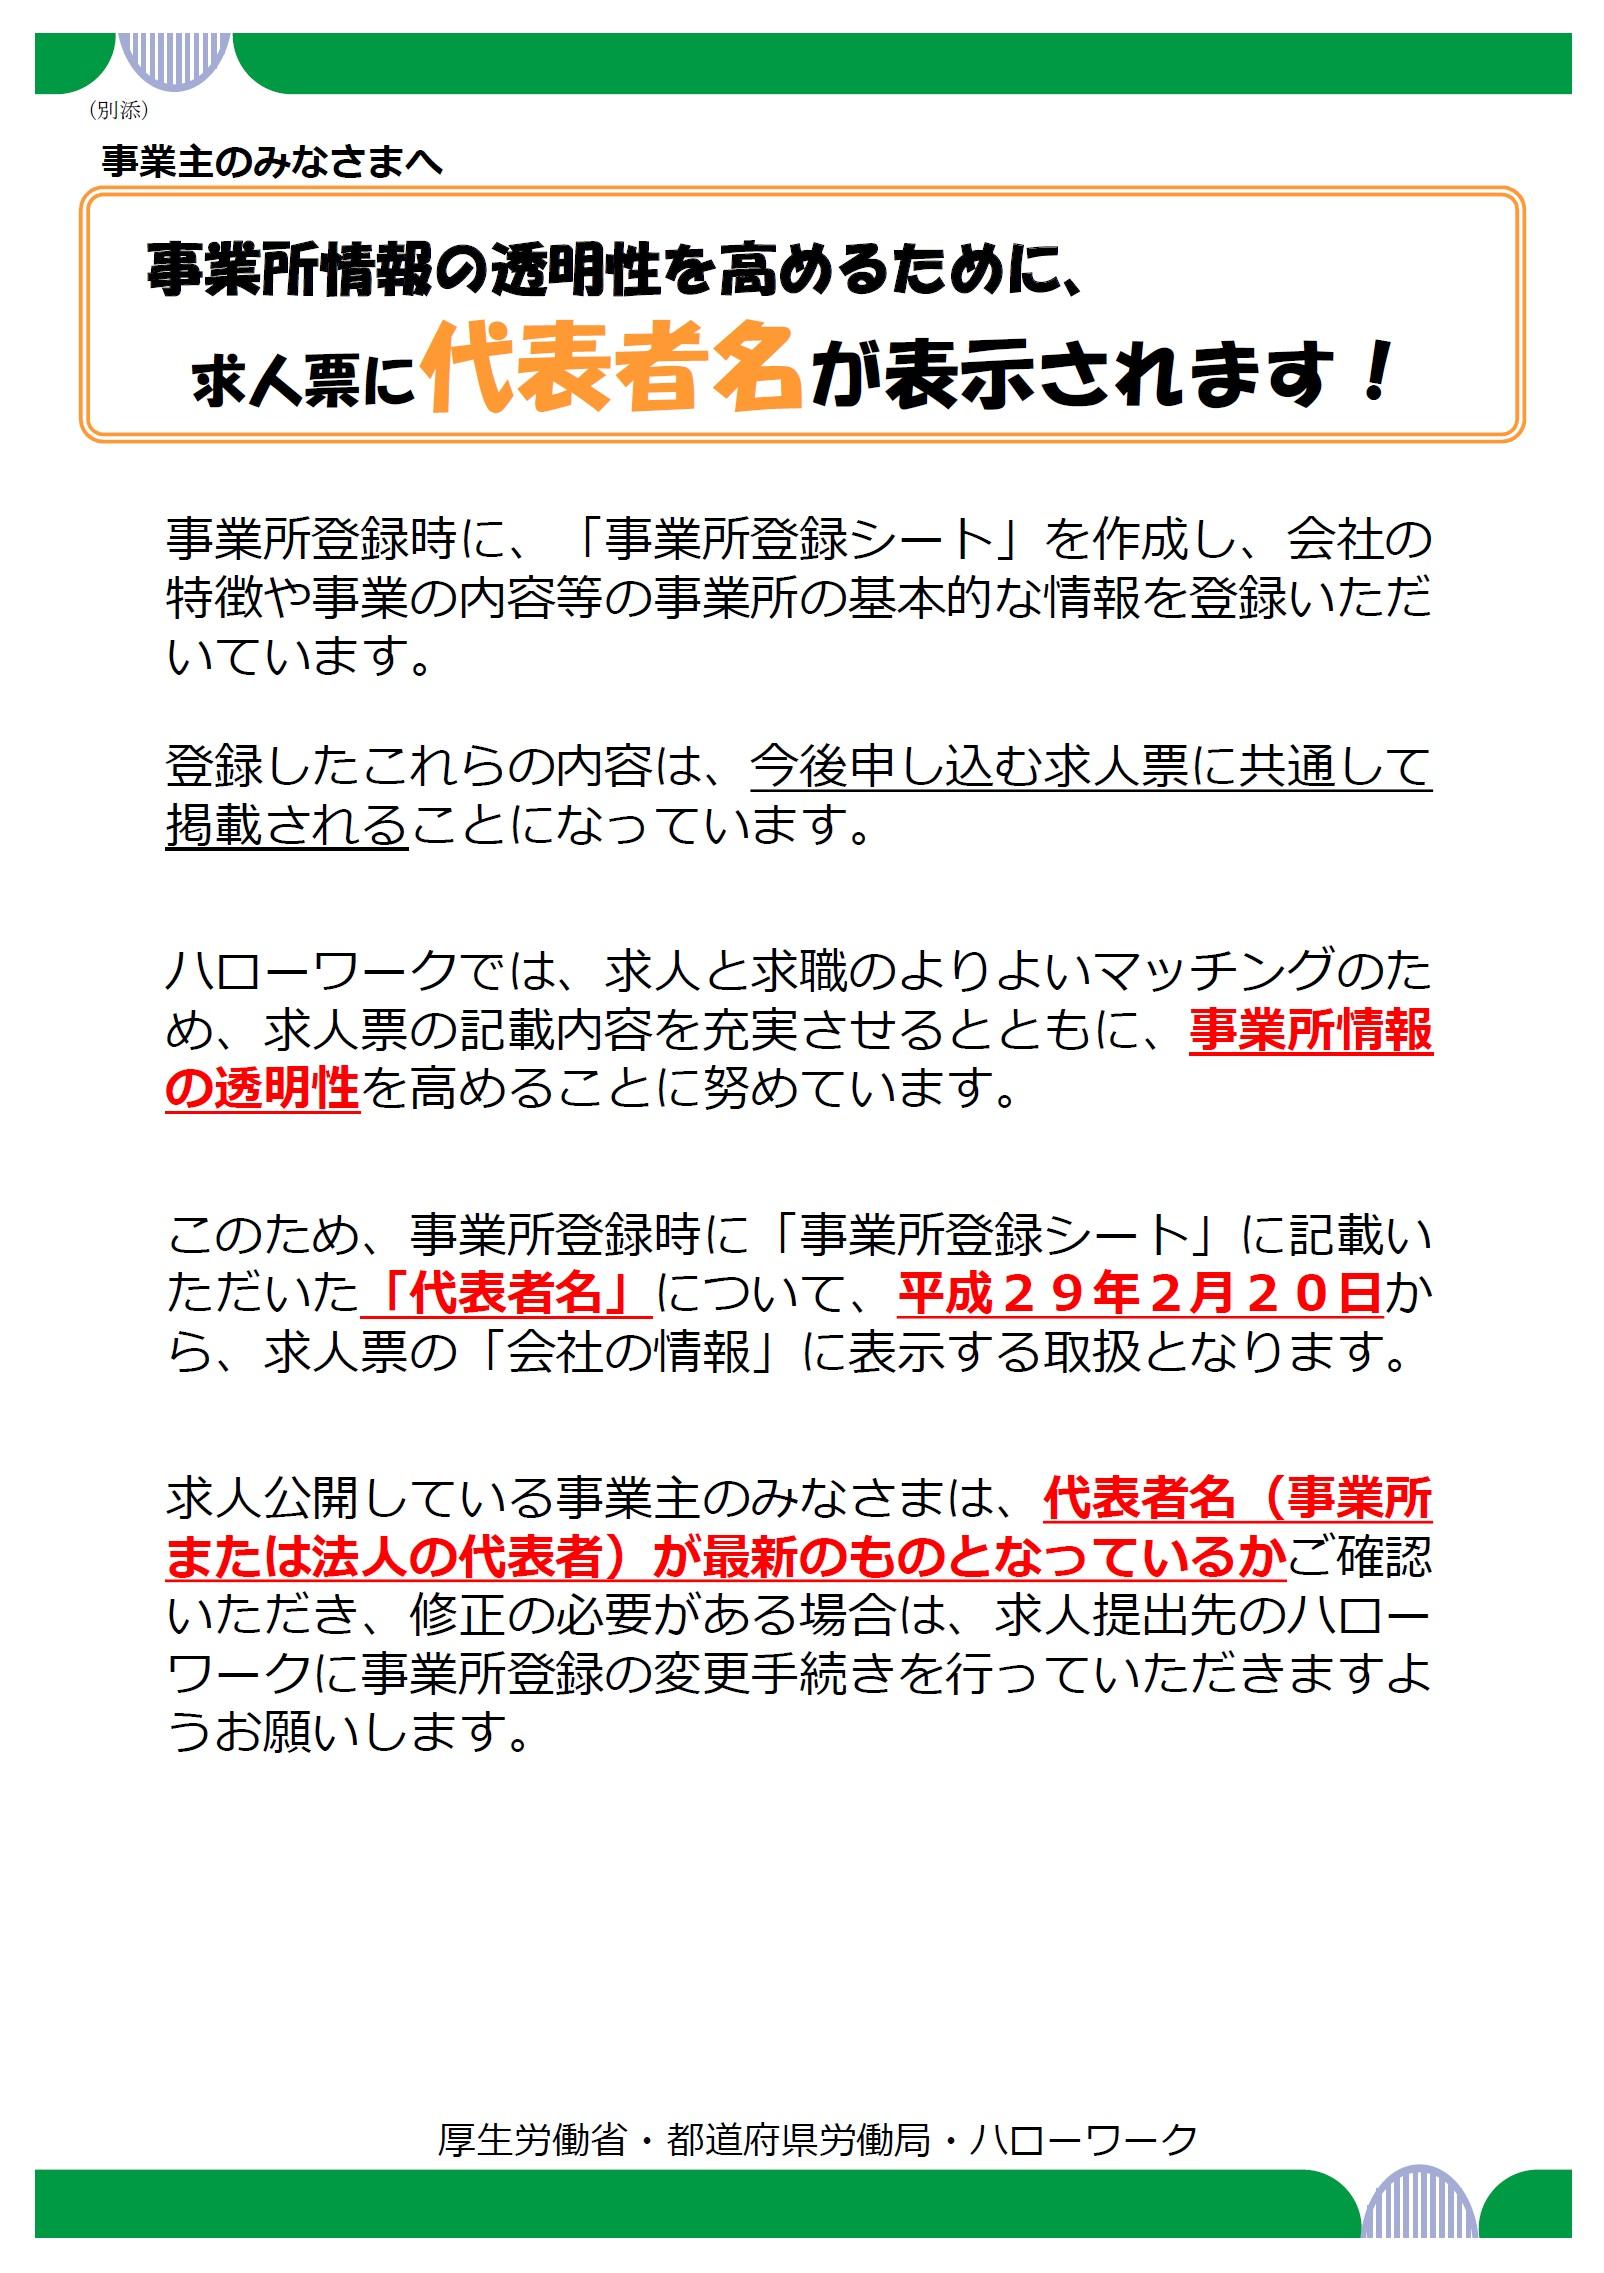 ハローワーク求人票の表示内容変更 求人票への代表者名の表示について 広島労働局